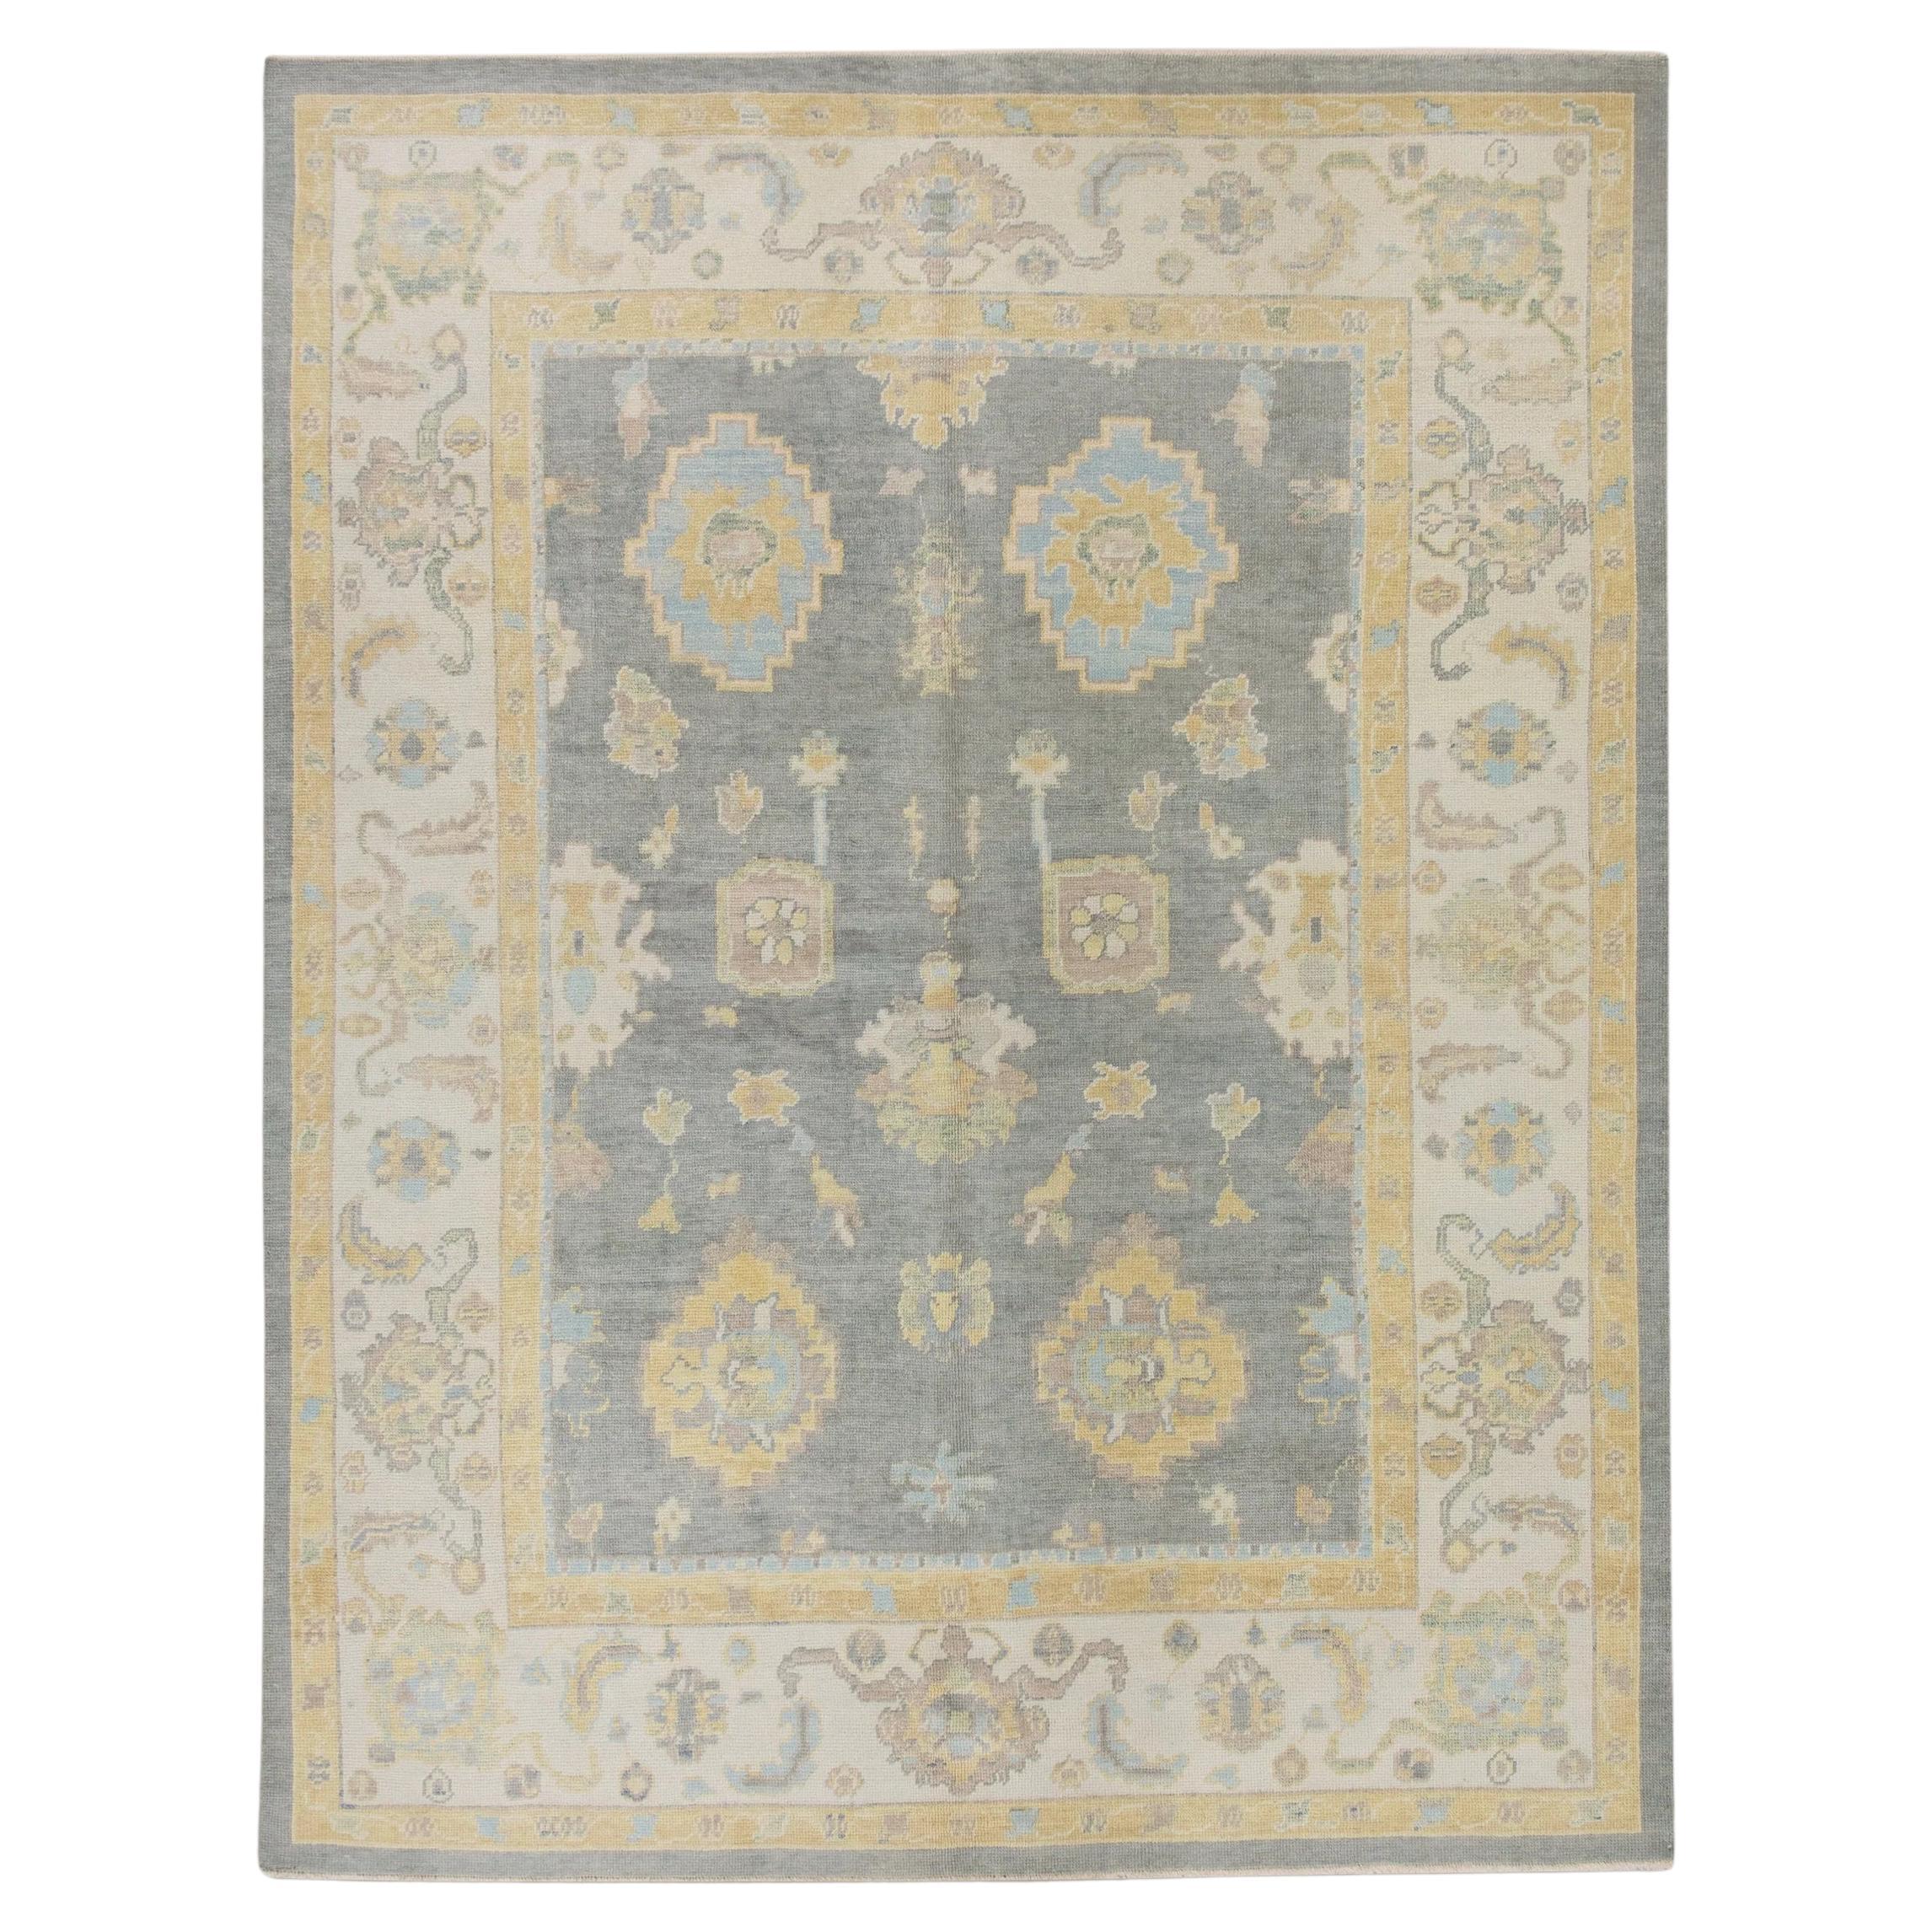 Türkischer Oushak-Teppich aus handgewebter Wolle in Grau & Gelb in floralem Design 7'11" x 10'2" im Angebot